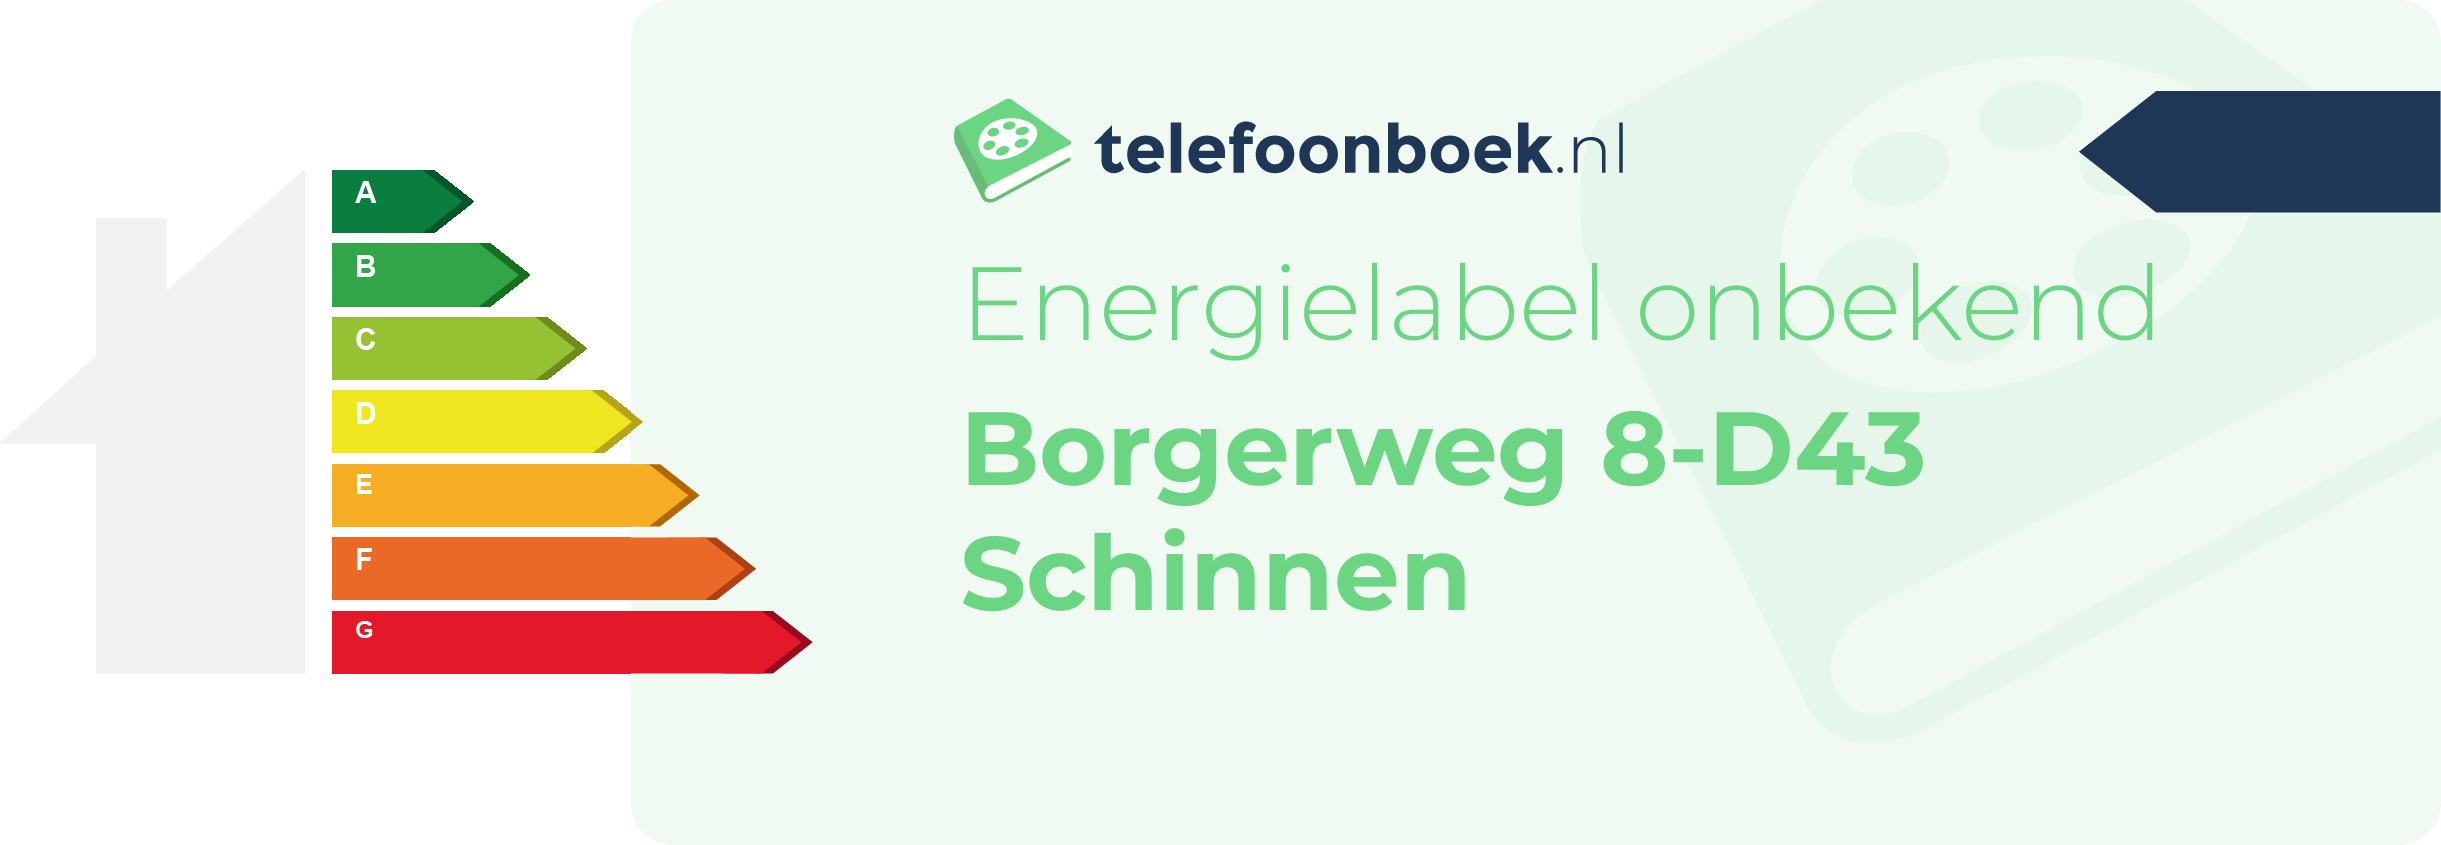 Energielabel Borgerweg 8-D43 Schinnen